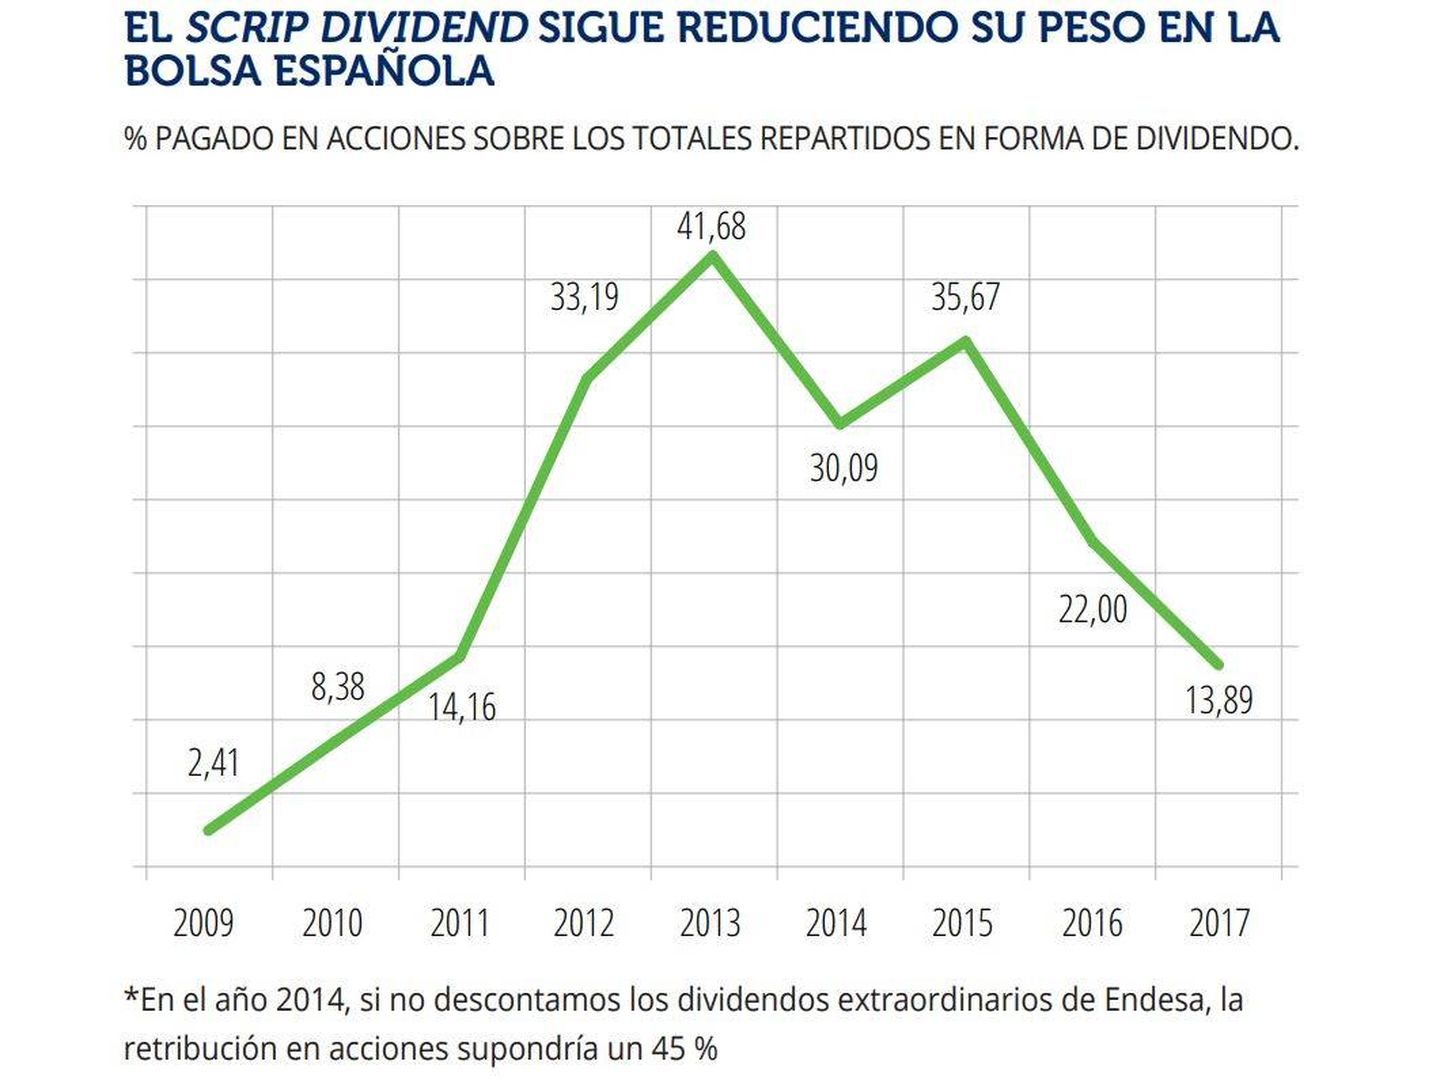 Peso del 'scrip dividend' en la bolsa española. (Fuente: BME)